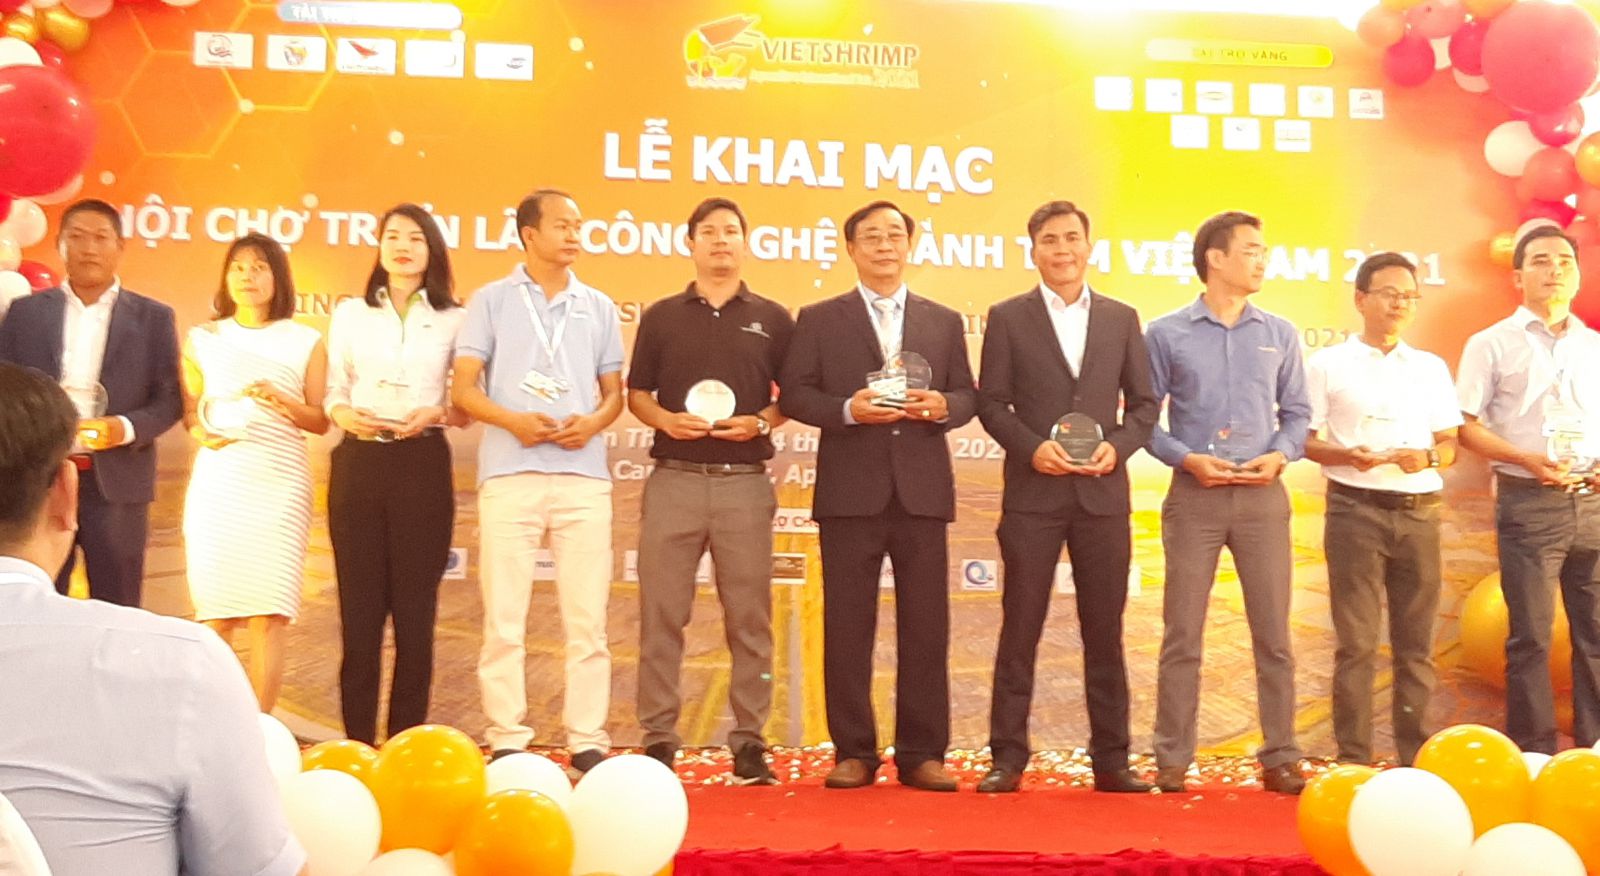 Ông Nguyễn Hữu Đức (ở giữa) giám đốc nhà máy VIETVET lên nhận kỷ niệm chương từ ban tổ chức Hội chợ Triển lãm Quốc tế ngành tôm Việt Nam (VIETSHRIMP) 2021